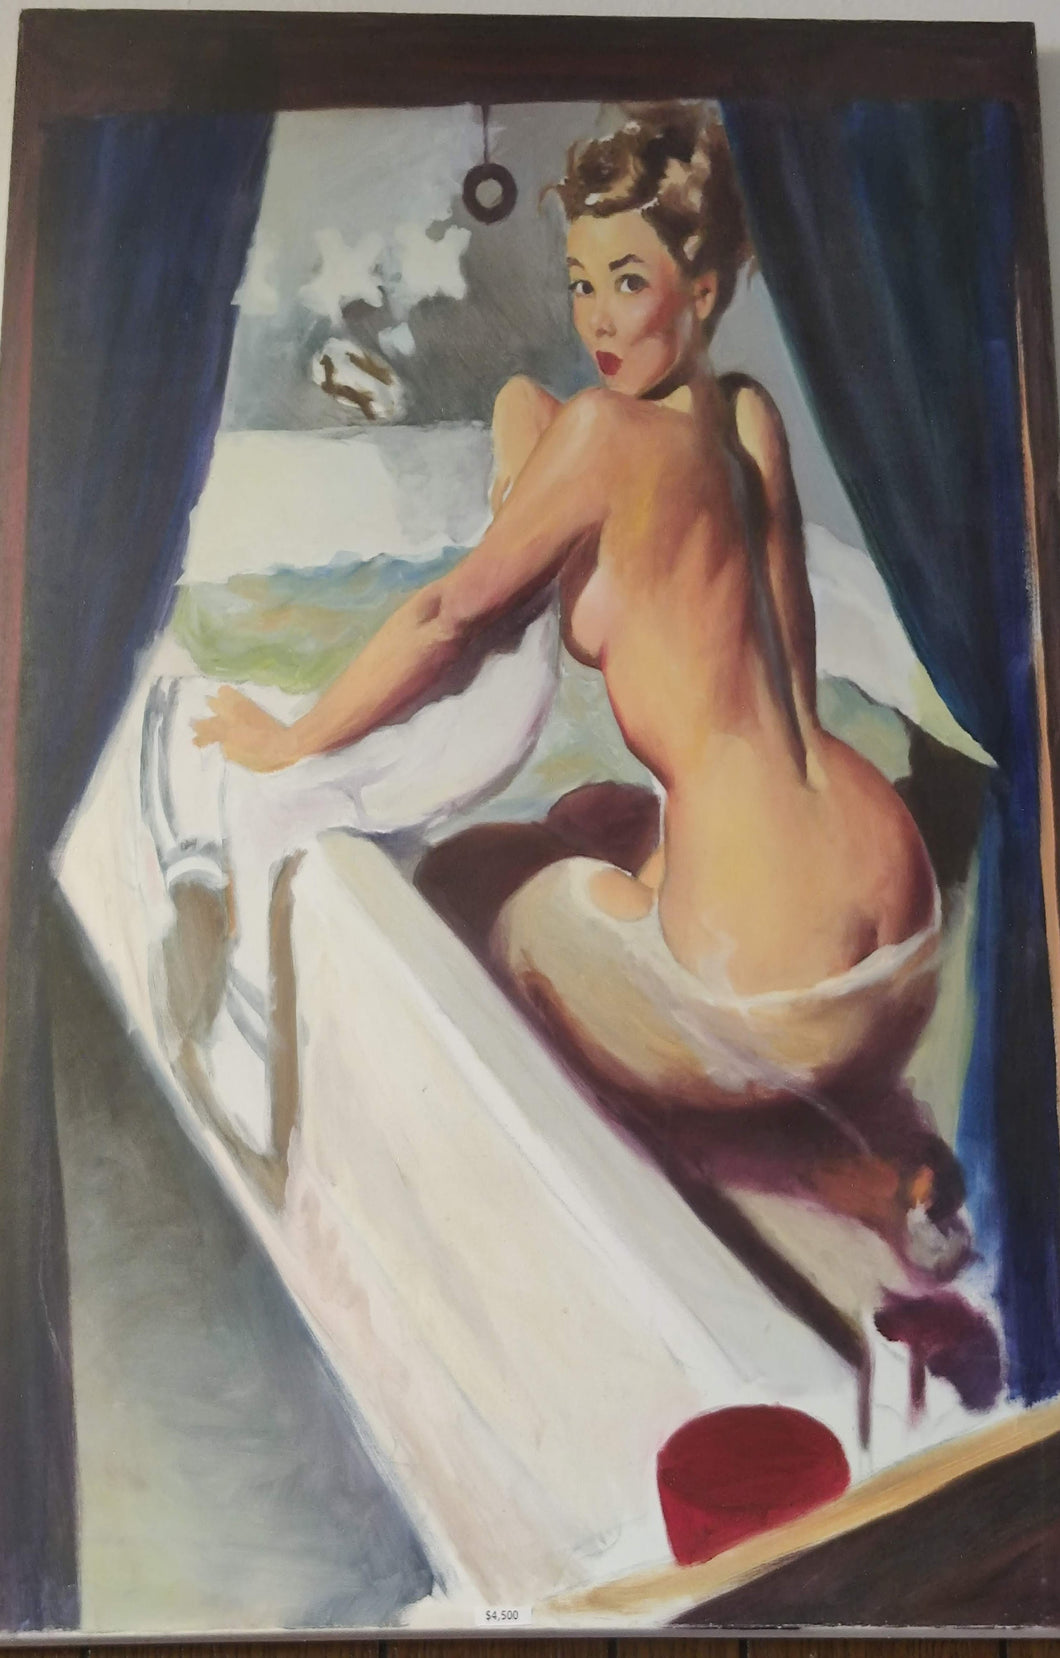 (Bathtub Nude) by Albert Soratorio